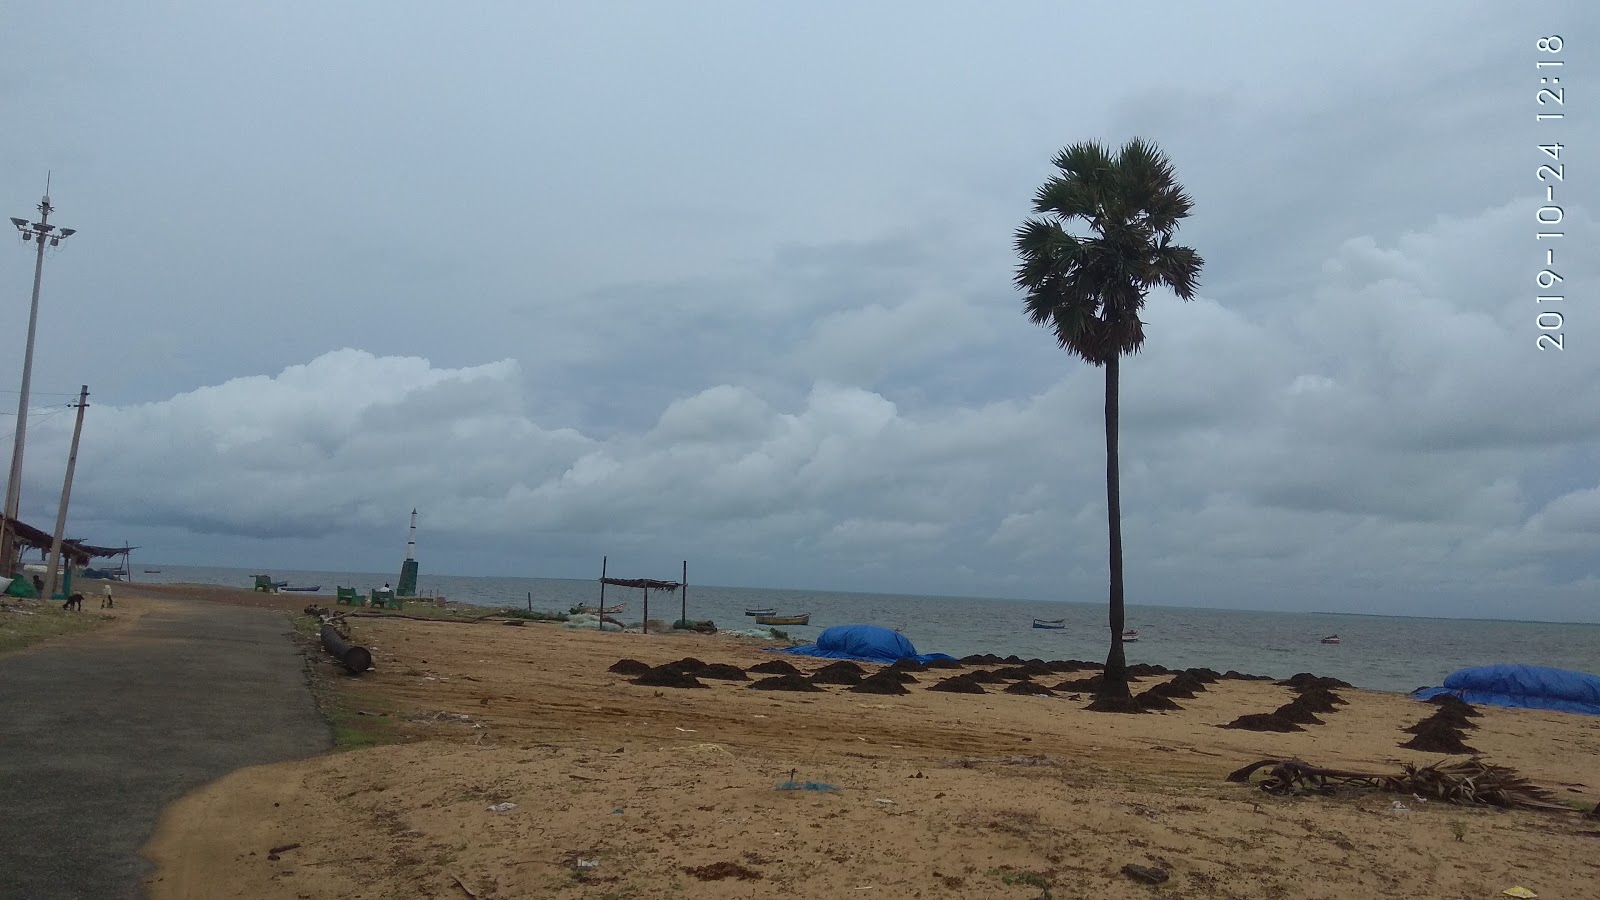 Photo de Seeni Appa Dargha Beach - endroit populaire parmi les connaisseurs de la détente